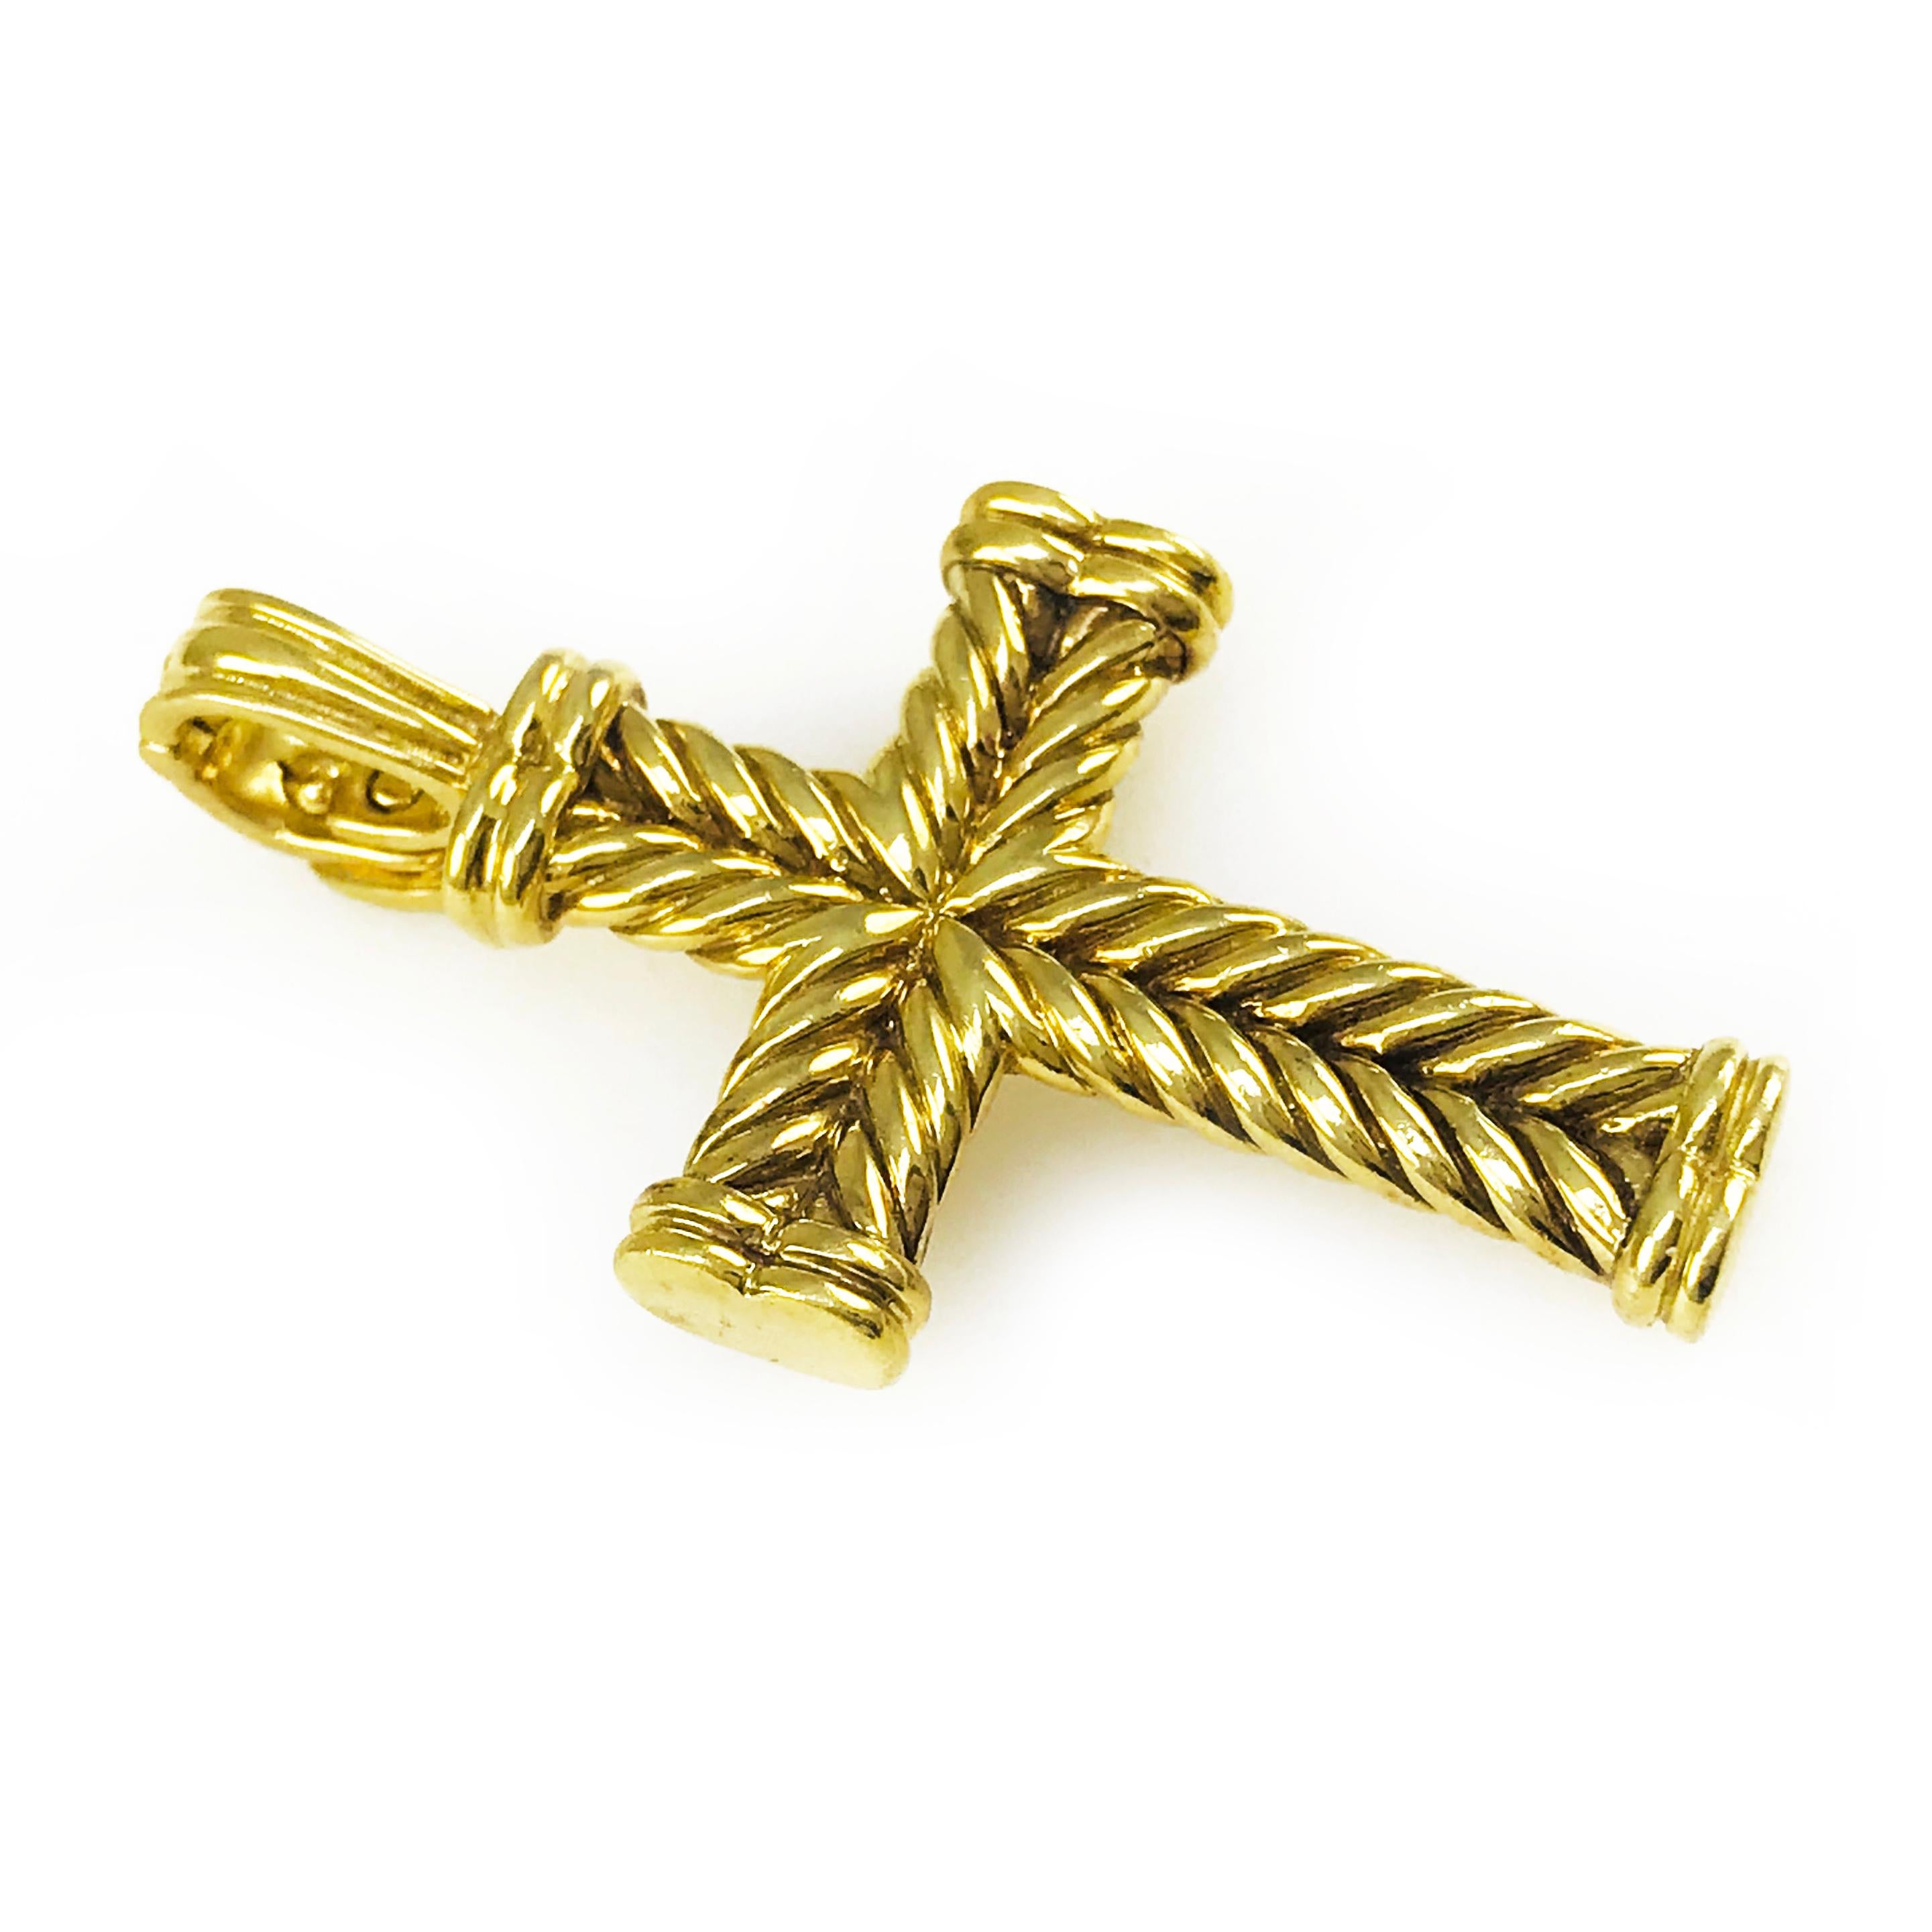 David Yurman pendentif croix en or jaune 18 carats avec attache ouverte. Le motif de câble caractéristique de Yurman est présent dans ce pendentif en forme de croix. Le poinçon ©D.Y. 750 est centré sur le dos de la croix.